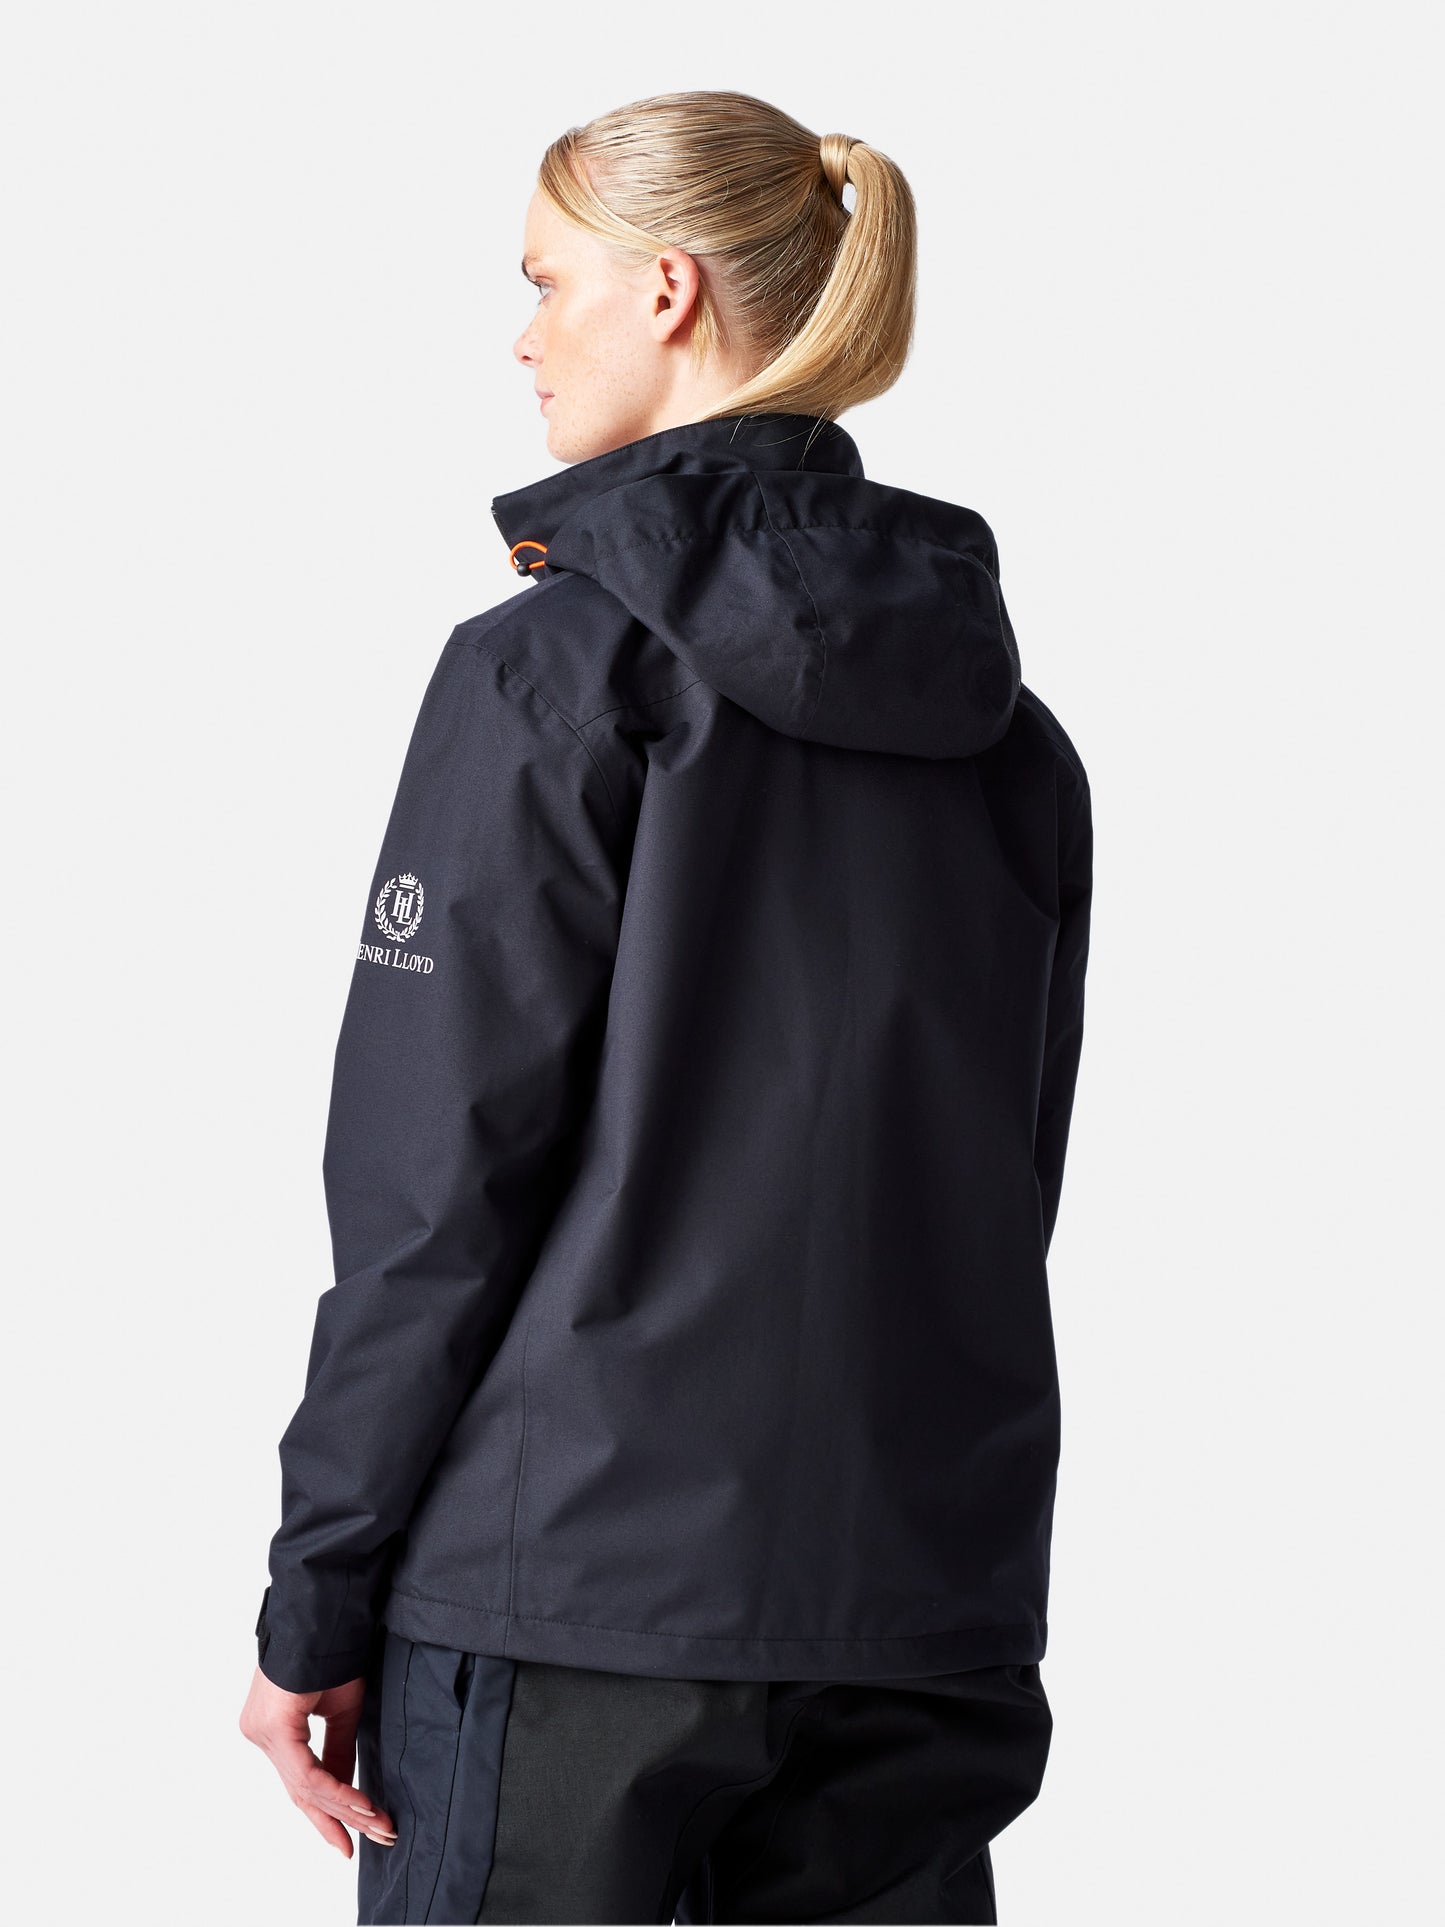 Women's Cool Breeze Jacket - Black